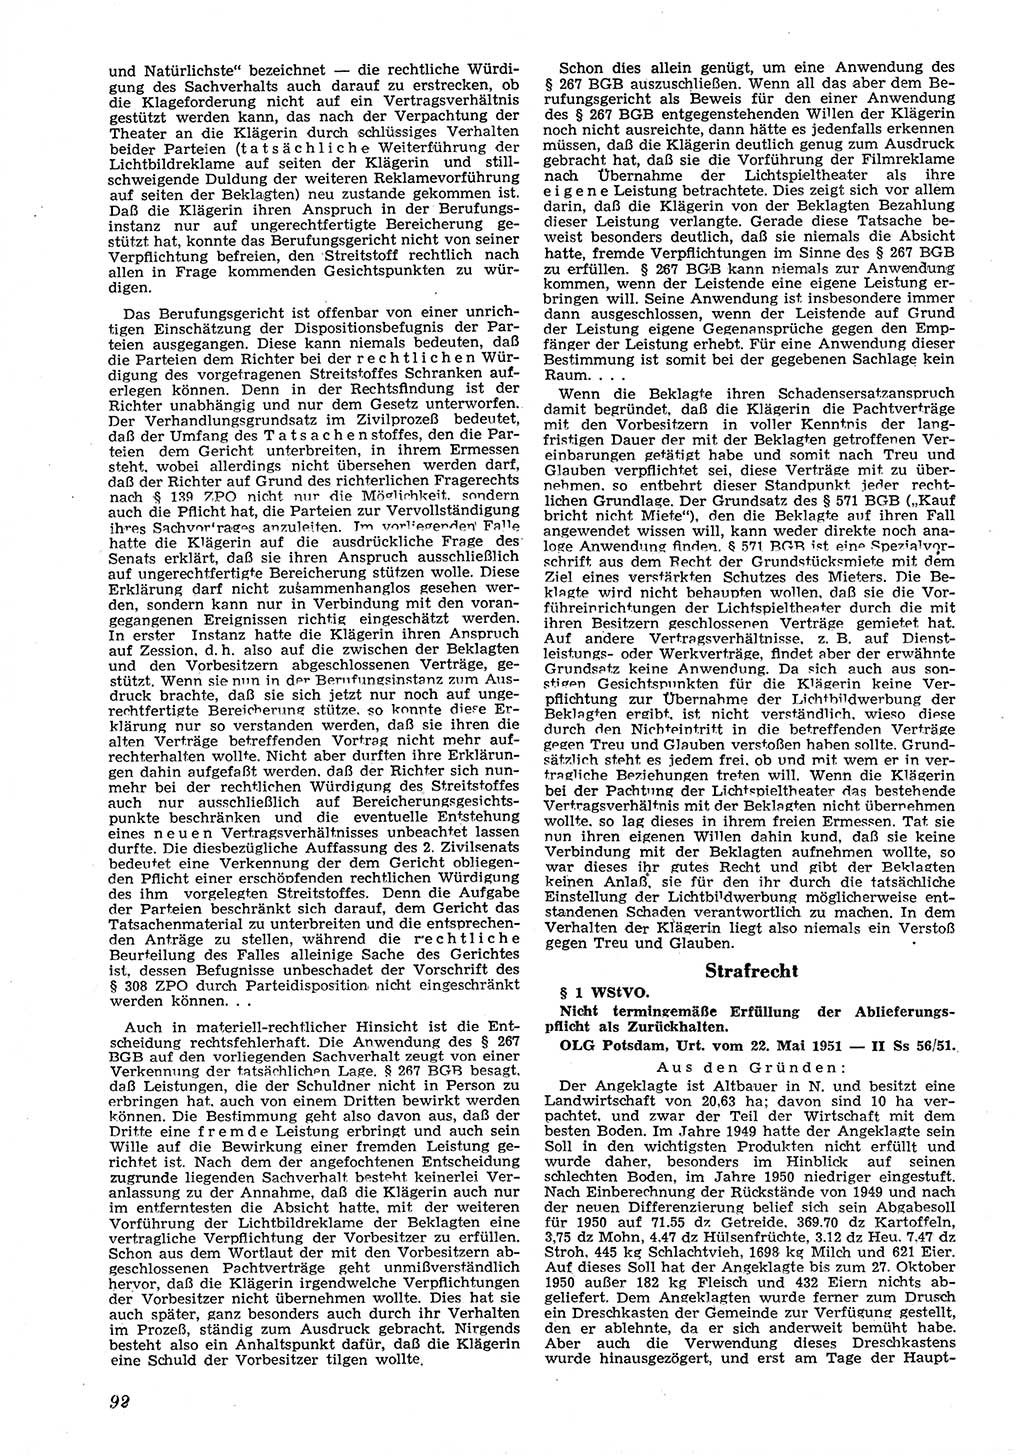 Neue Justiz (NJ), Zeitschrift für Recht und Rechtswissenschaft [Deutsche Demokratische Republik (DDR)], 6. Jahrgang 1952, Seite 92 (NJ DDR 1952, S. 92)